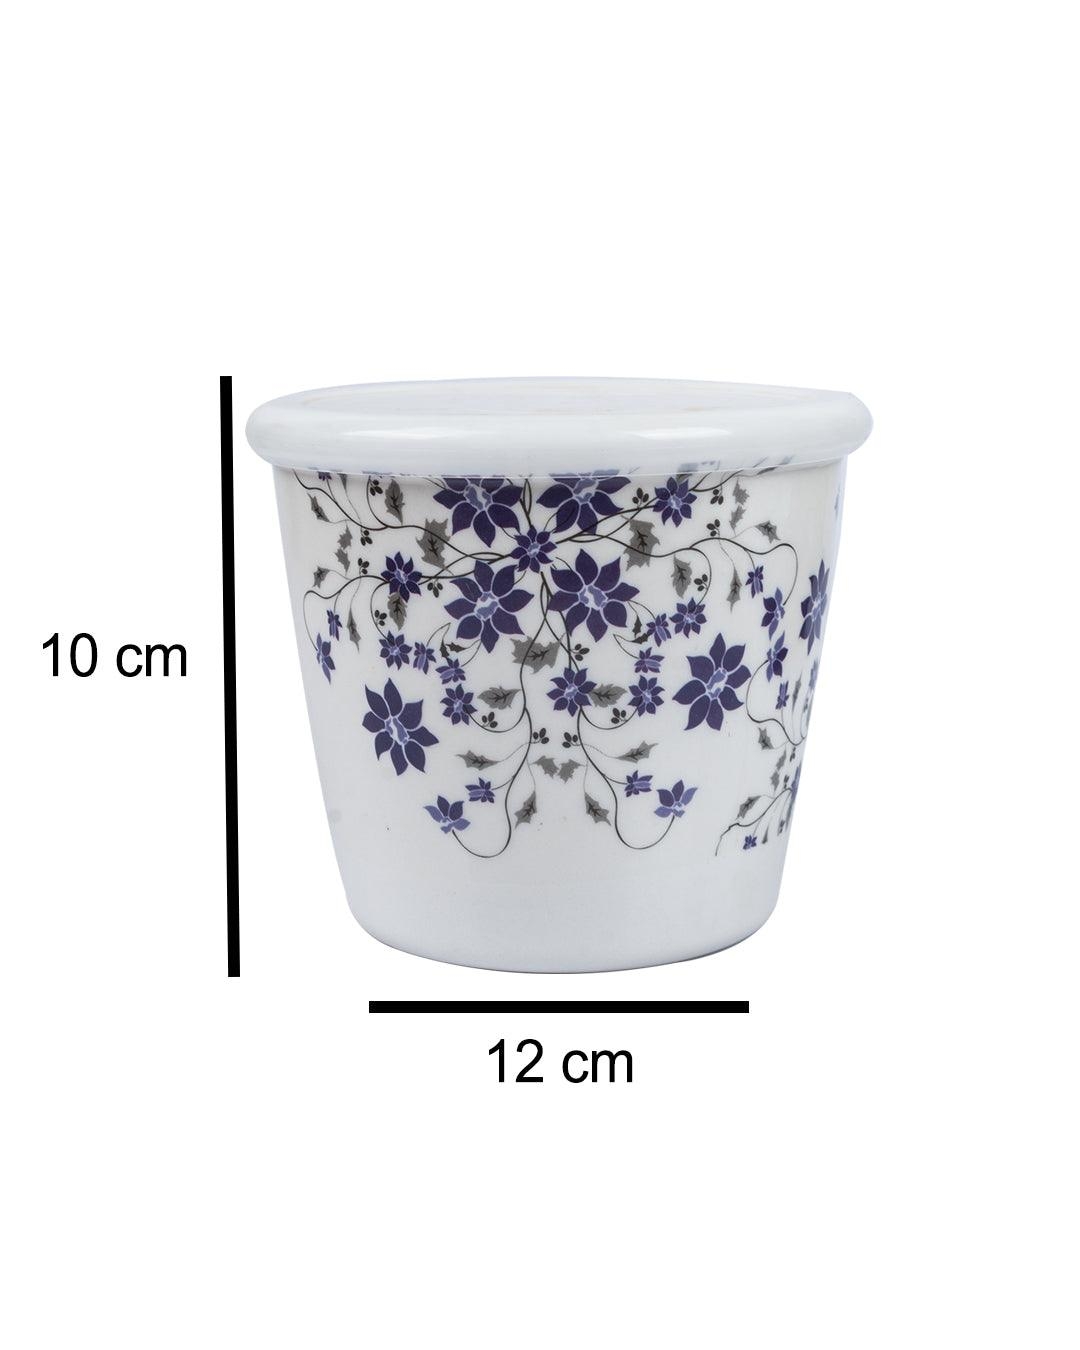 Market 99 | Market 99 Tableware Floral Design Melamine Jar for Dining Table Pickle Storage Canister, 650 mL 4